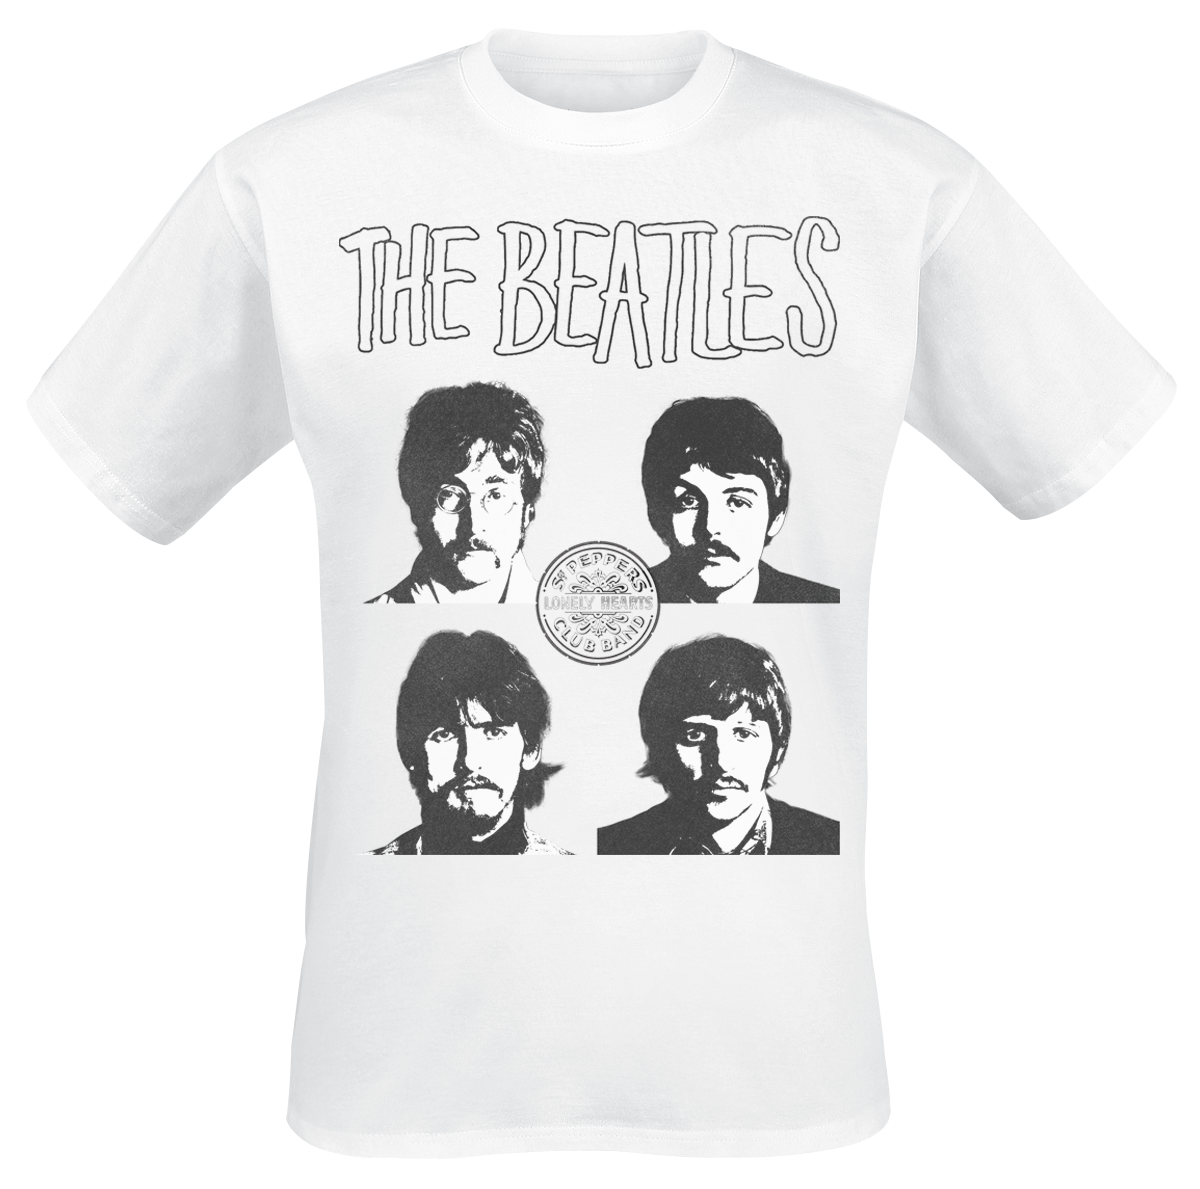 The Beatles - Sgt. Peppers Portrais - T-Shirt - weiß